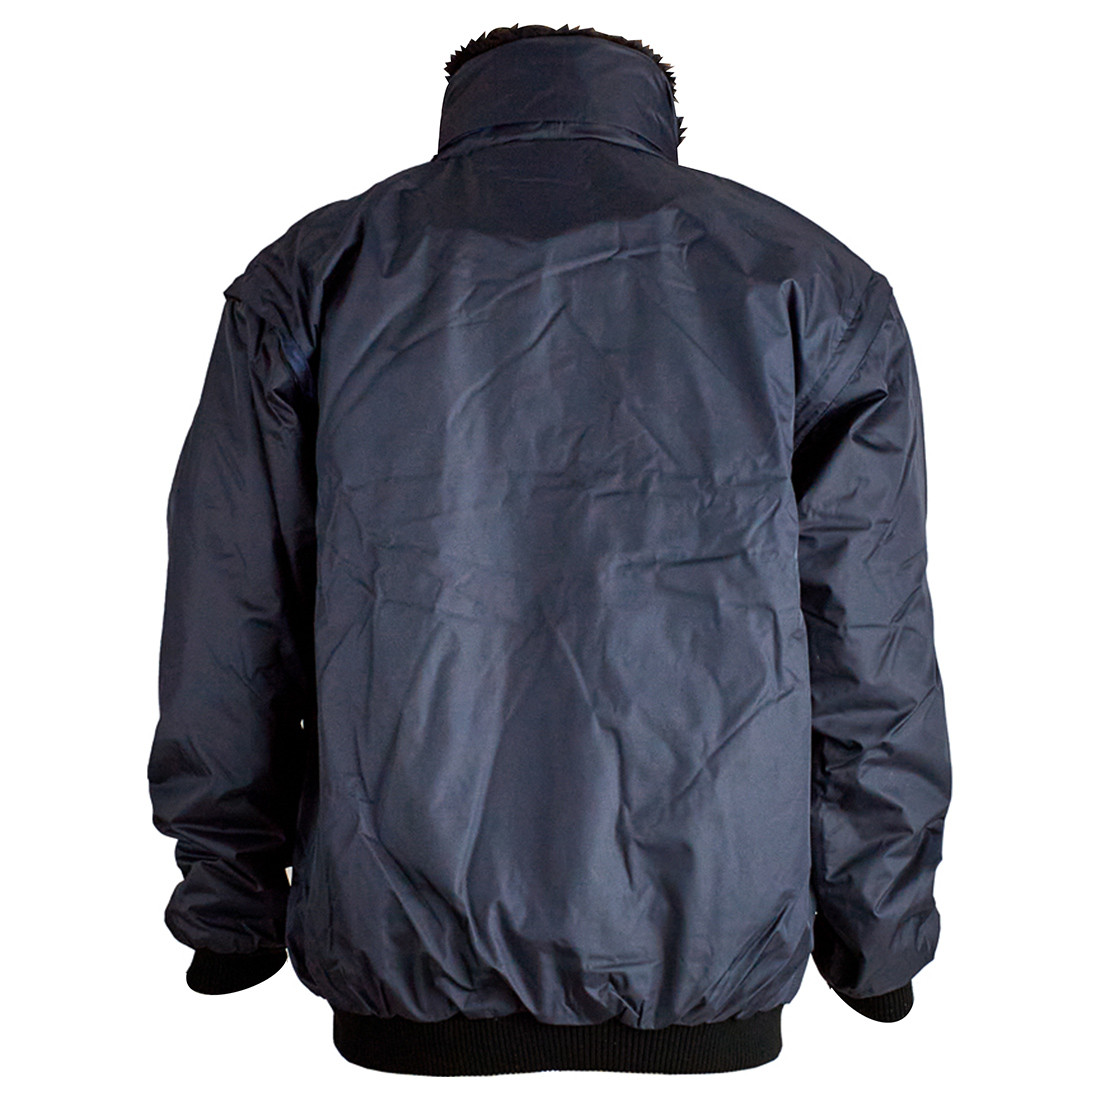 Giacca blu navy 2in1 - Abbigliamento di protezione